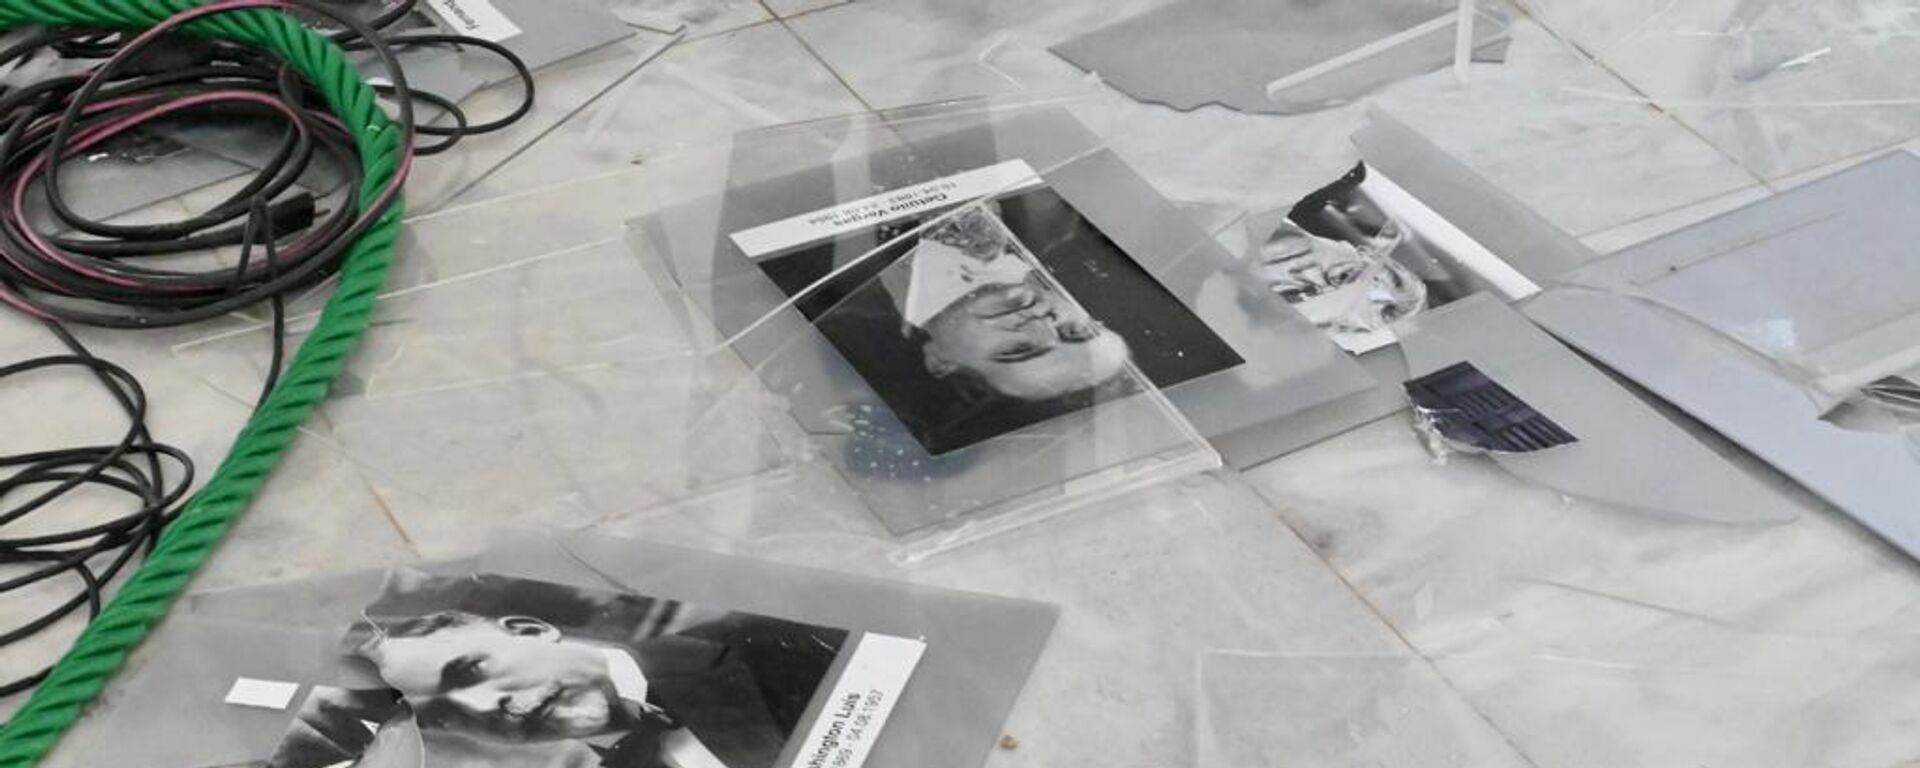 Registro da galeria de fotos de ex-presidentes vandalizada. Fotos foram retiradas da parede e lançadas no chão durante a invasão ao Palácio do Planalto. Brasília, 8 de janeiro de 2023 - Sputnik Brasil, 1920, 11.01.2023